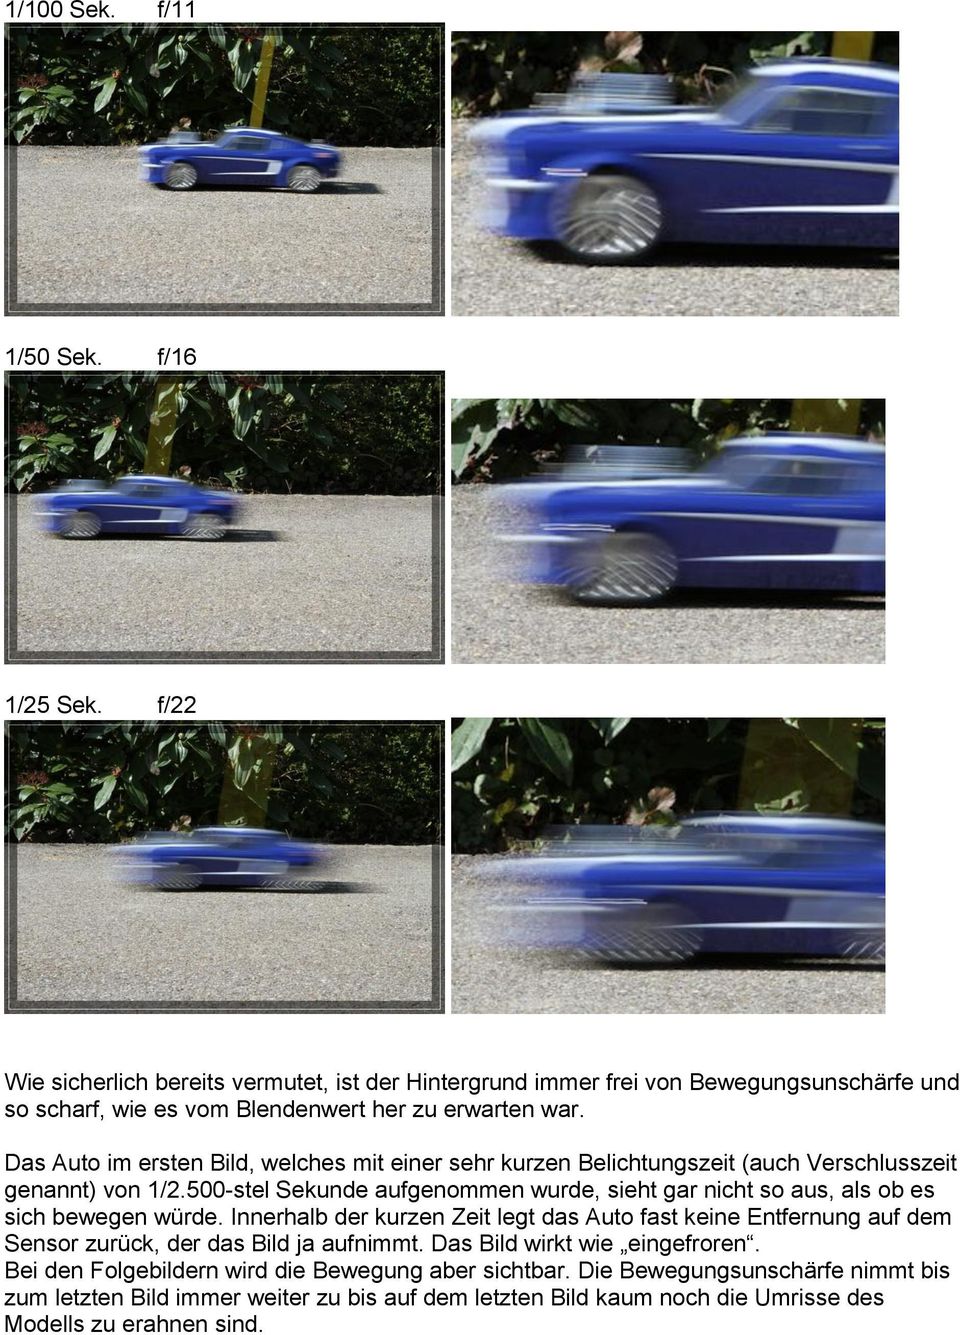 Das Auto im ersten Bild, welches mit einer sehr kurzen Belichtungszeit (auch Verschlusszeit genannt) von 1/2.